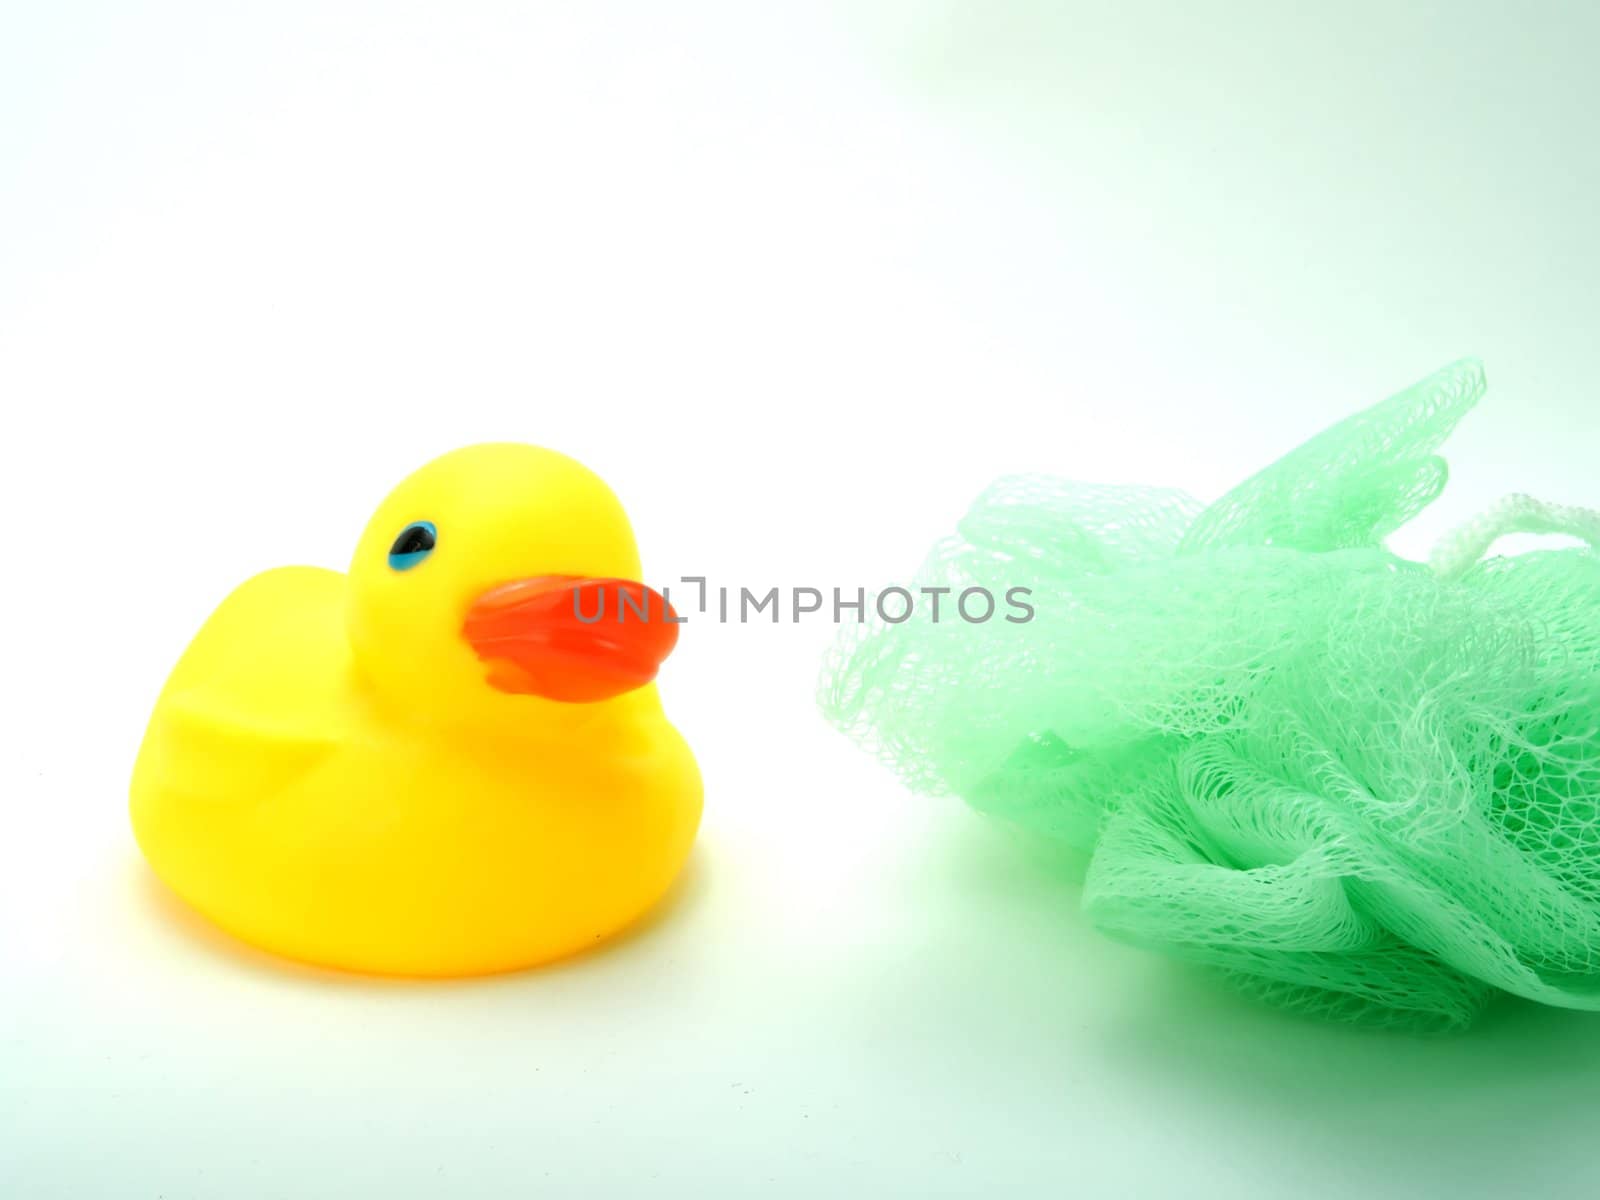 Rubber duck by henrischmit